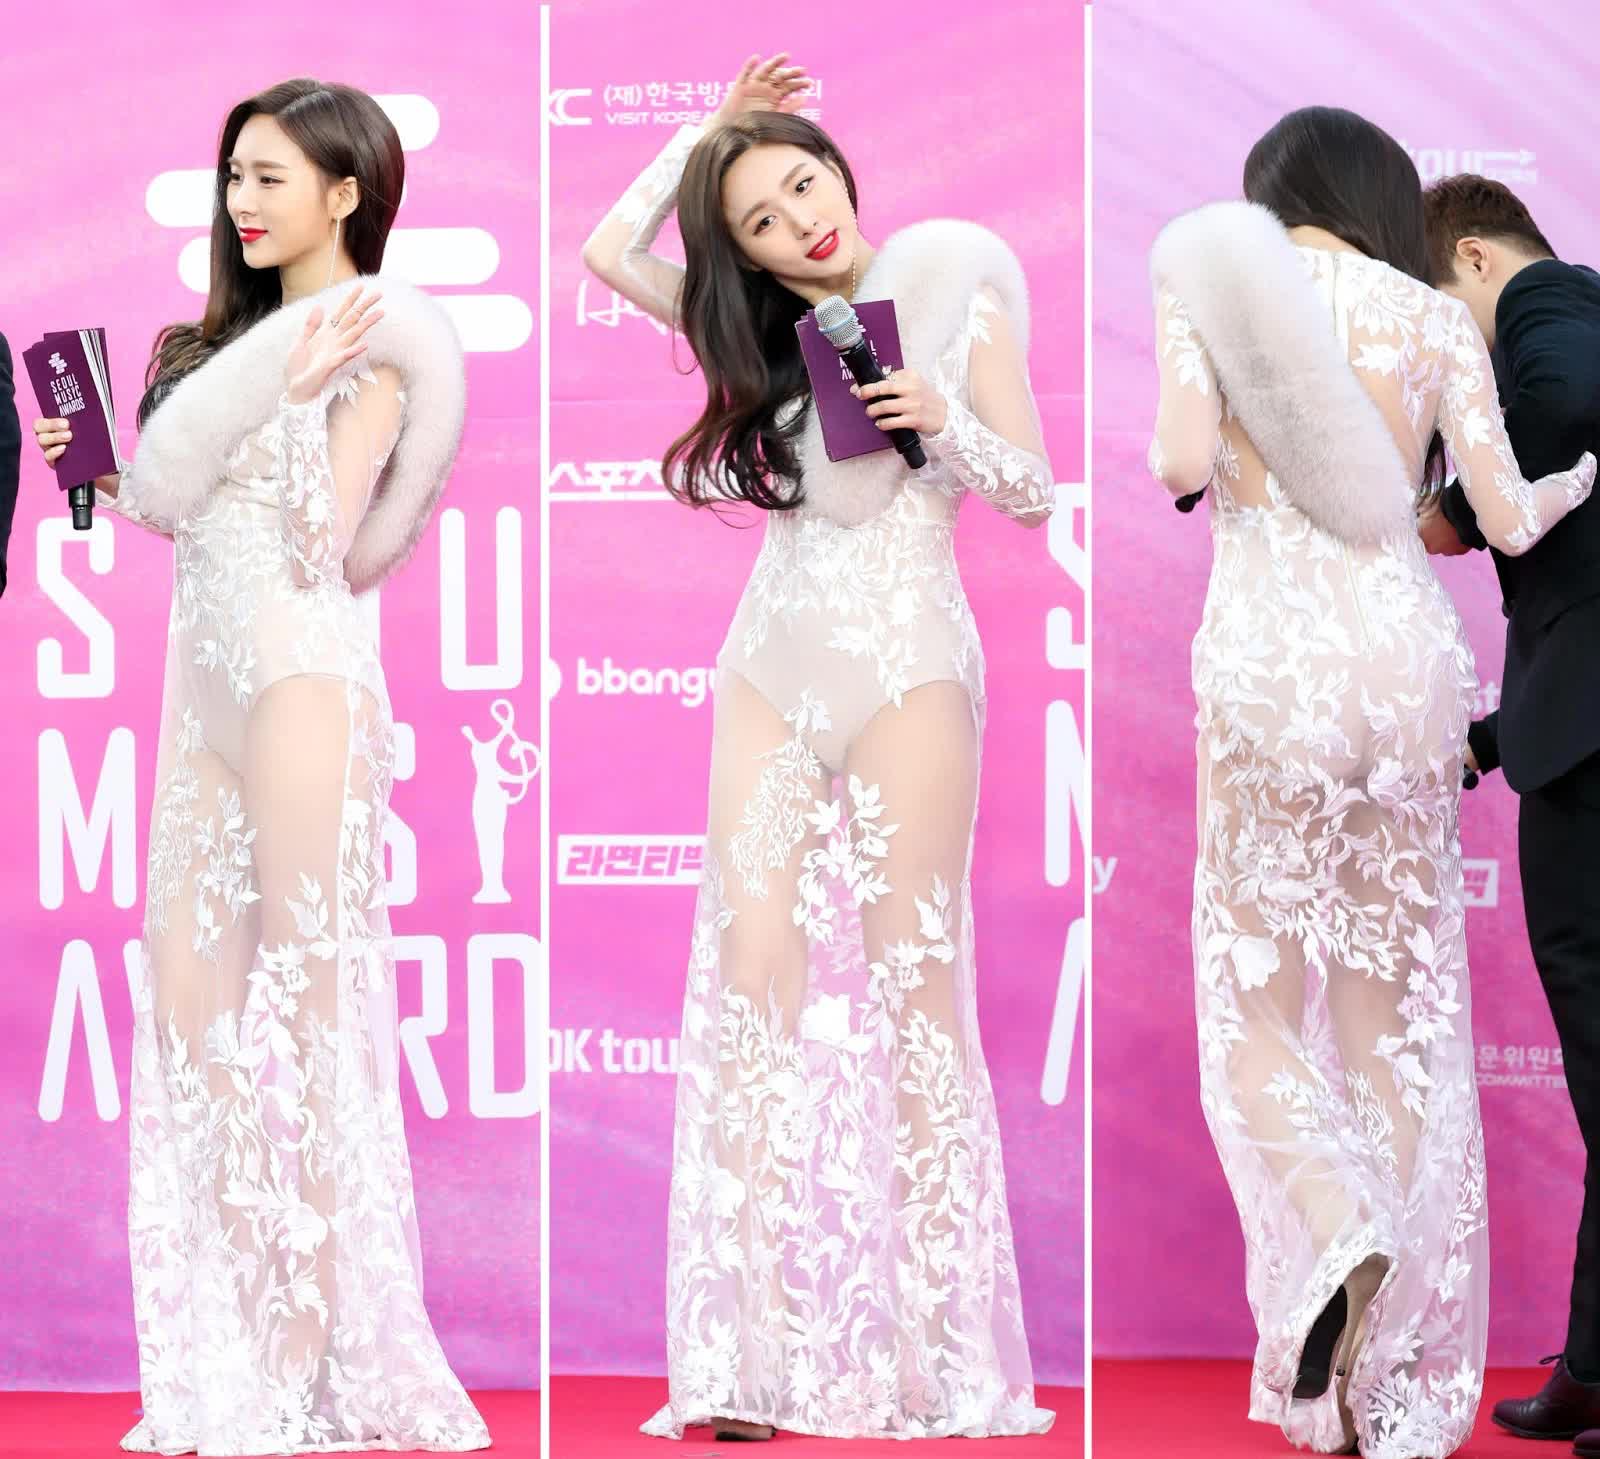 Sao Hàn nhận gạch đá vì mặc hở: Jennie o ép vòng 1, Momo như mặc váy ngủ, Lee Sung Kyung dính sự cố nội y - Ảnh 3.